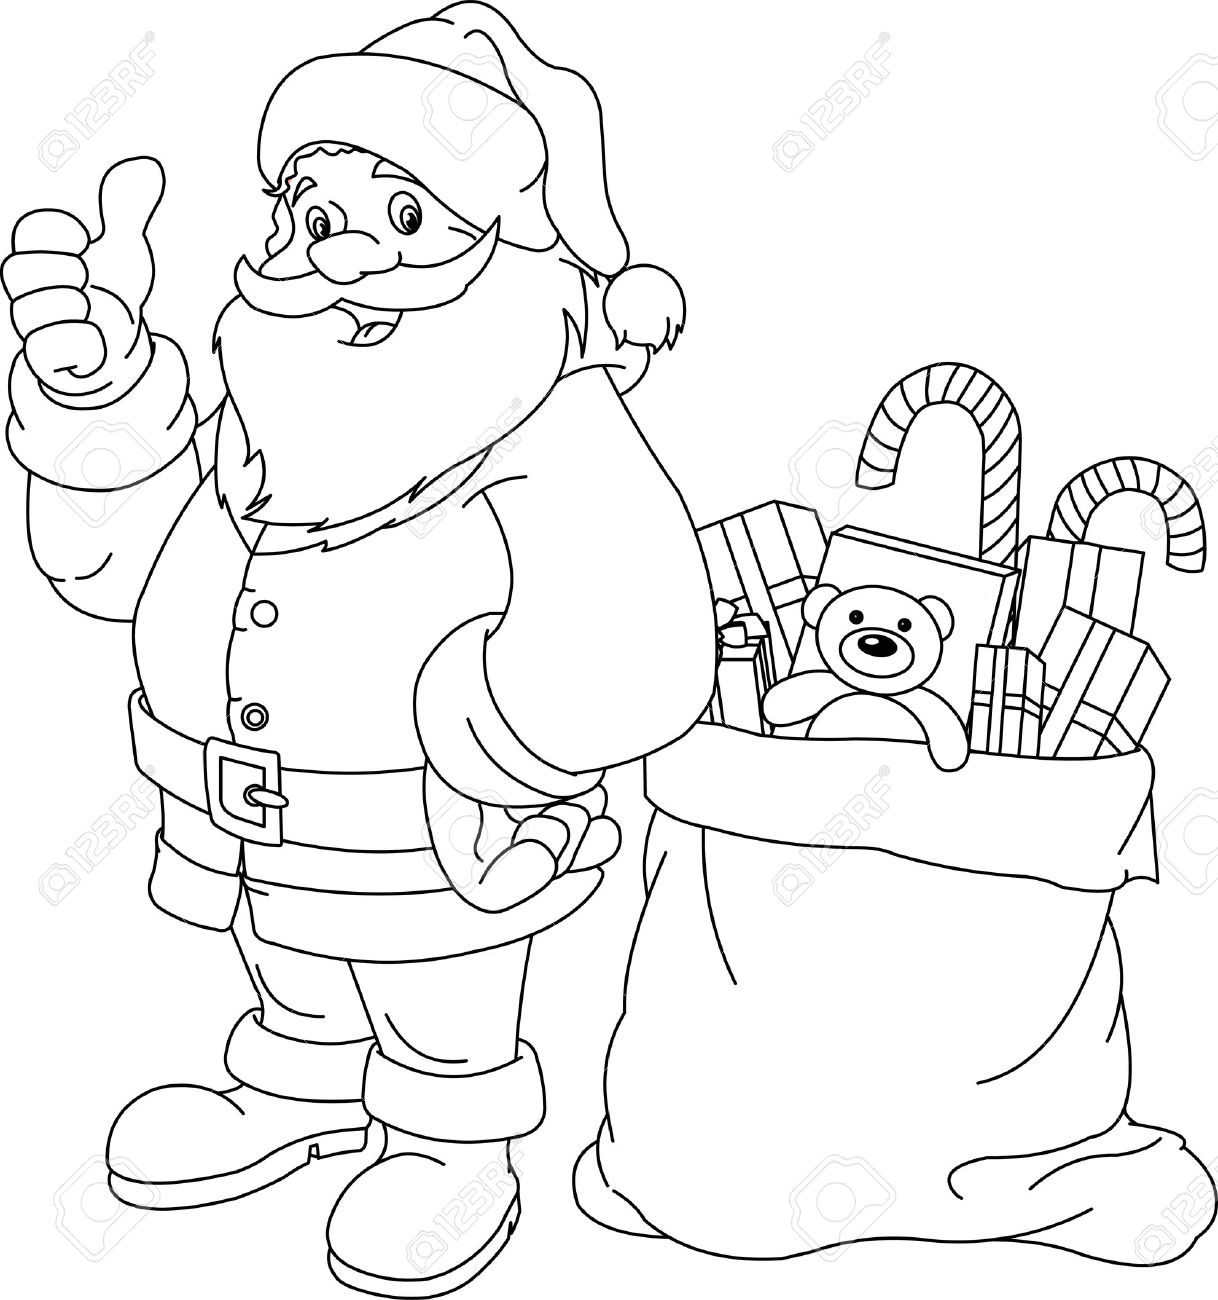 christmas santa claus coloring pages navishta sketch santaclaus christmas special pages santa coloring christmas claus 